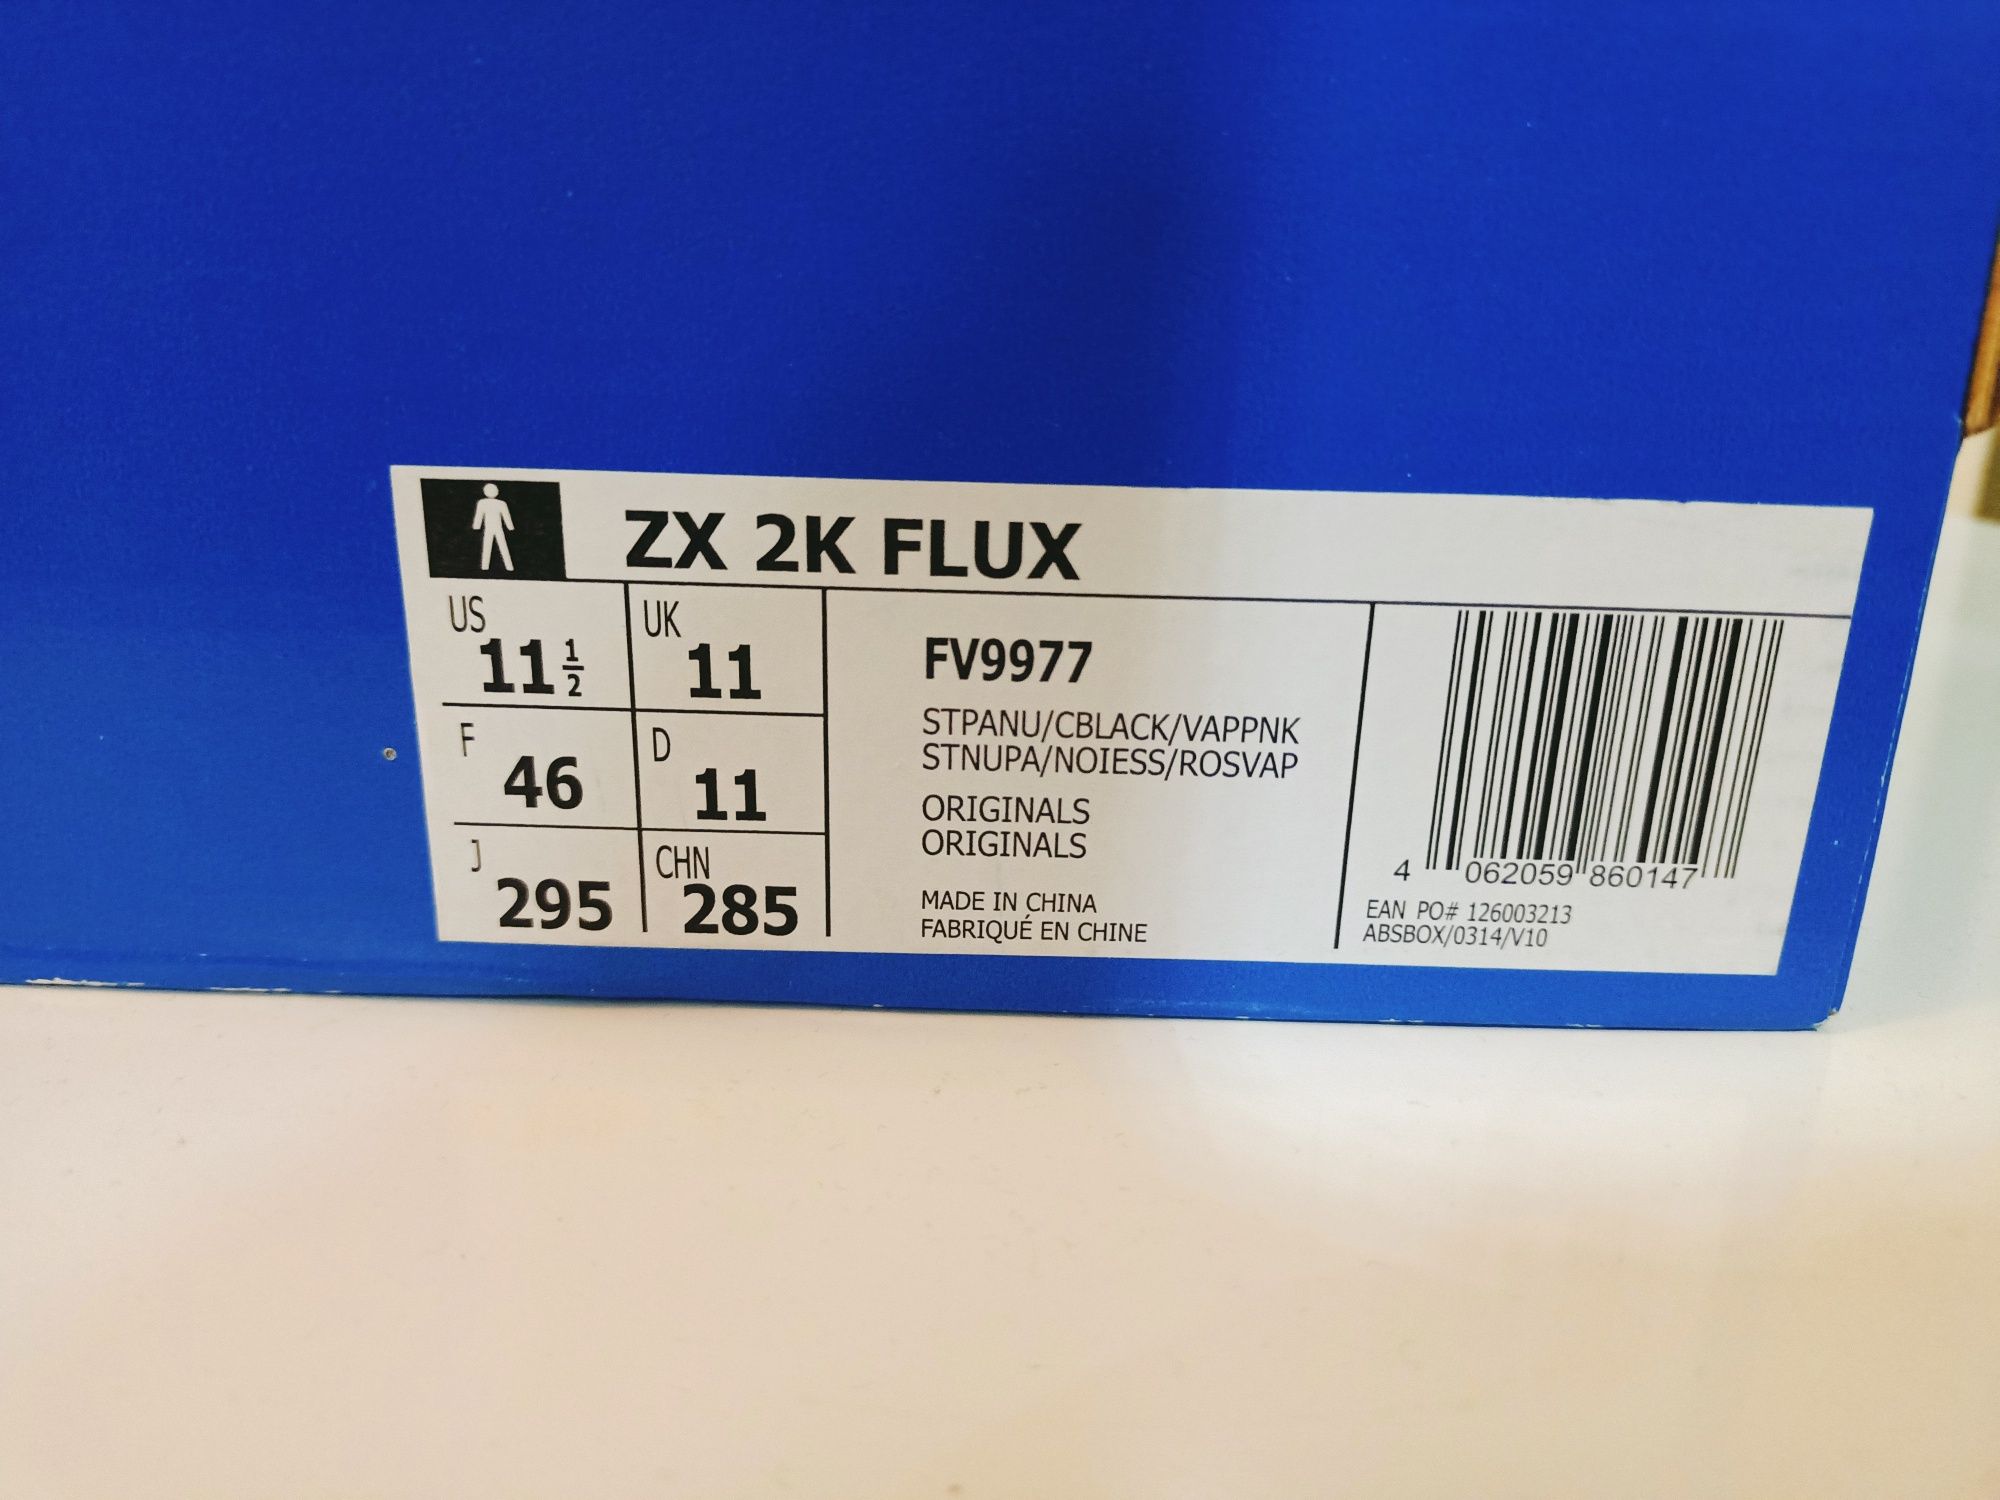 Buty adidas ZX 2K FLUX rozmiar 46